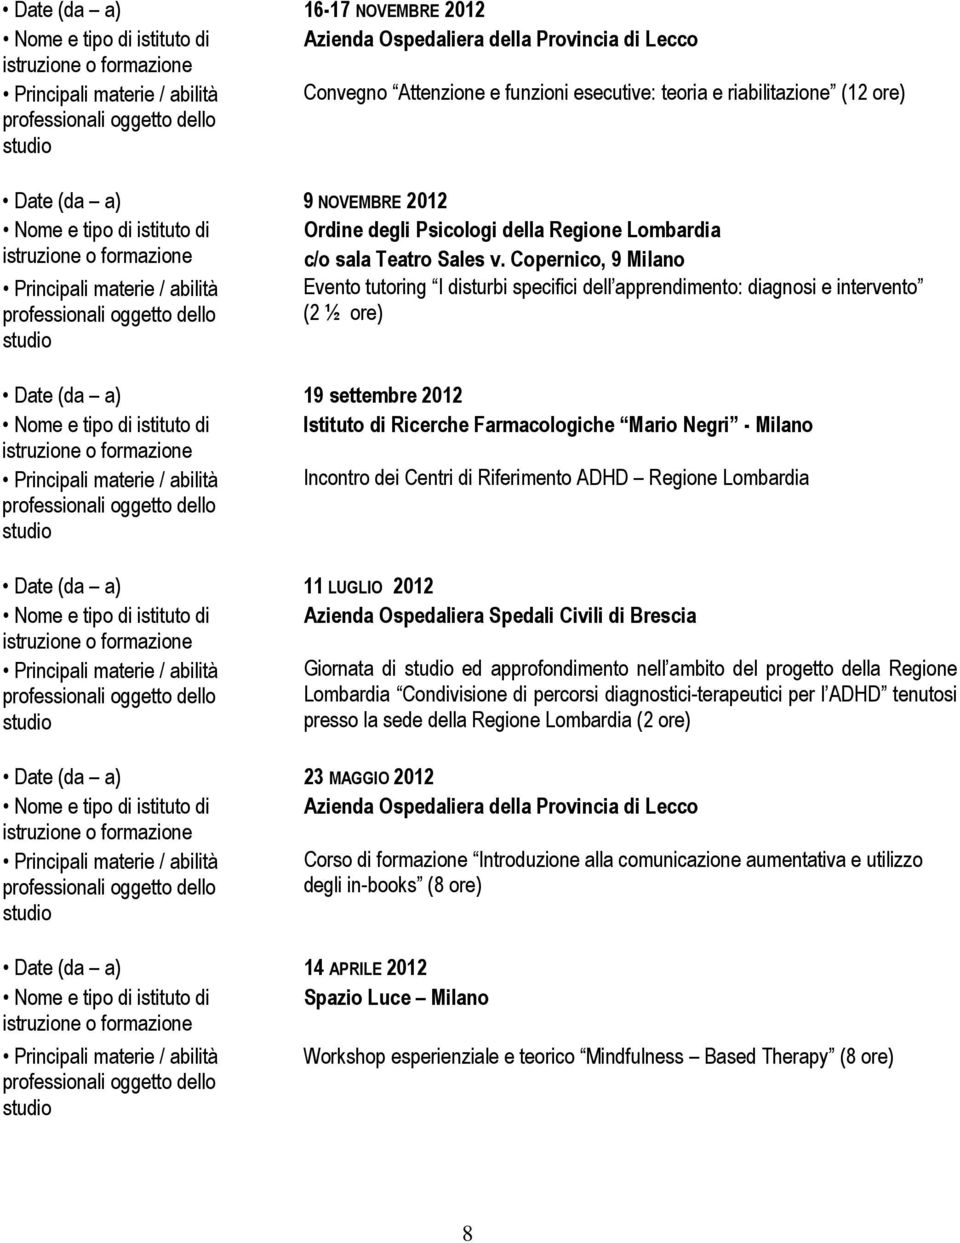 Copernico, 9 Milano Principali materie / abilità Evento tutoring I disturbi specifici dell apprendimento: diagnosi e intervento (2 ½ ore) Date (da a) 19 settembre 2012 Nome e tipo di istituto di